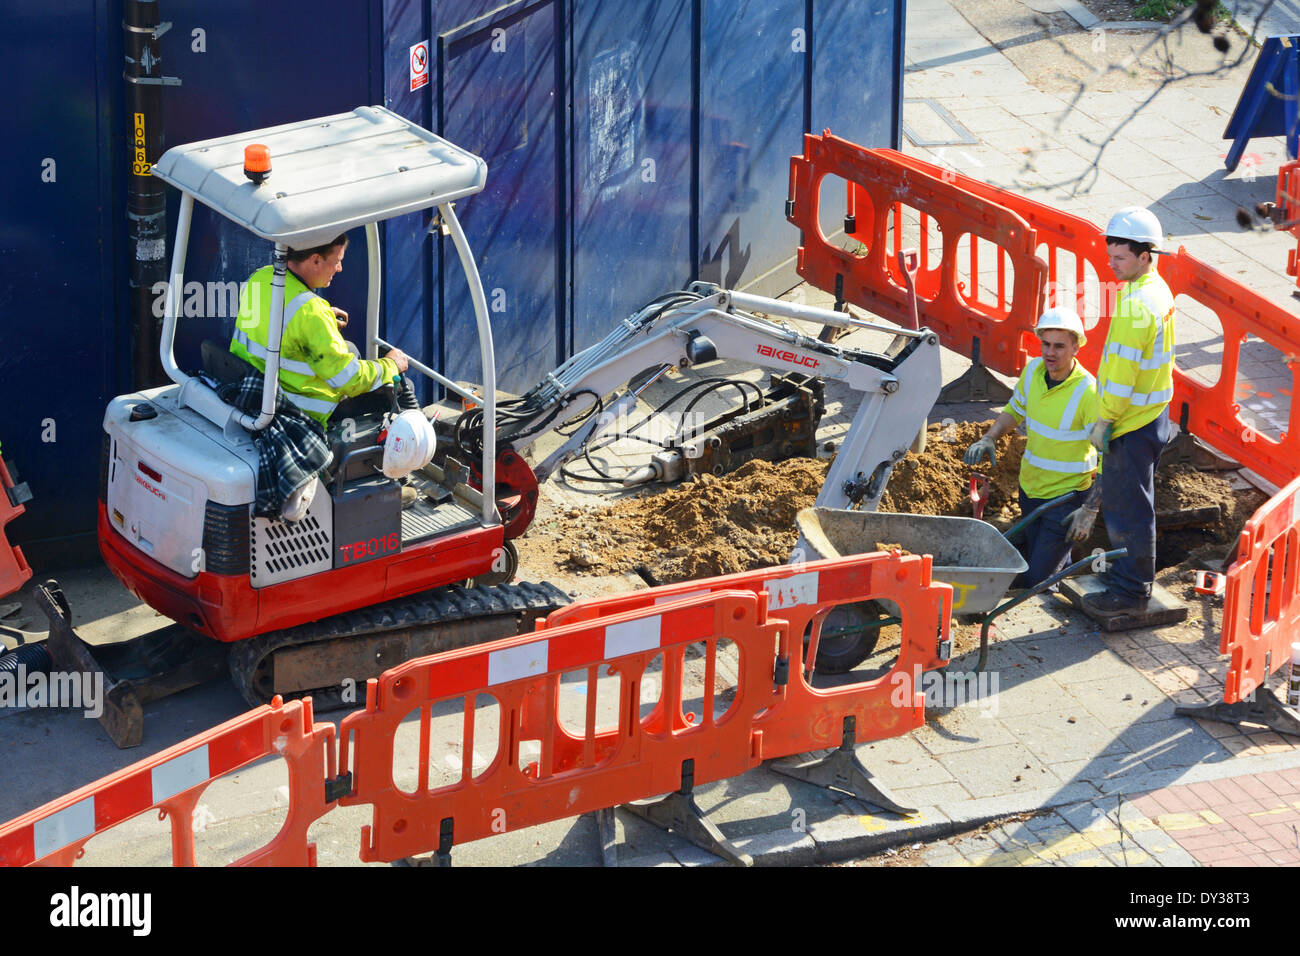 Vue aérienne équipe de trois hommes portant un casque et une veste haute visibilité utilisant une mini pelle creuse creusant le trottoir derrière les barrières rouges Londres Royaume-Uni Banque D'Images